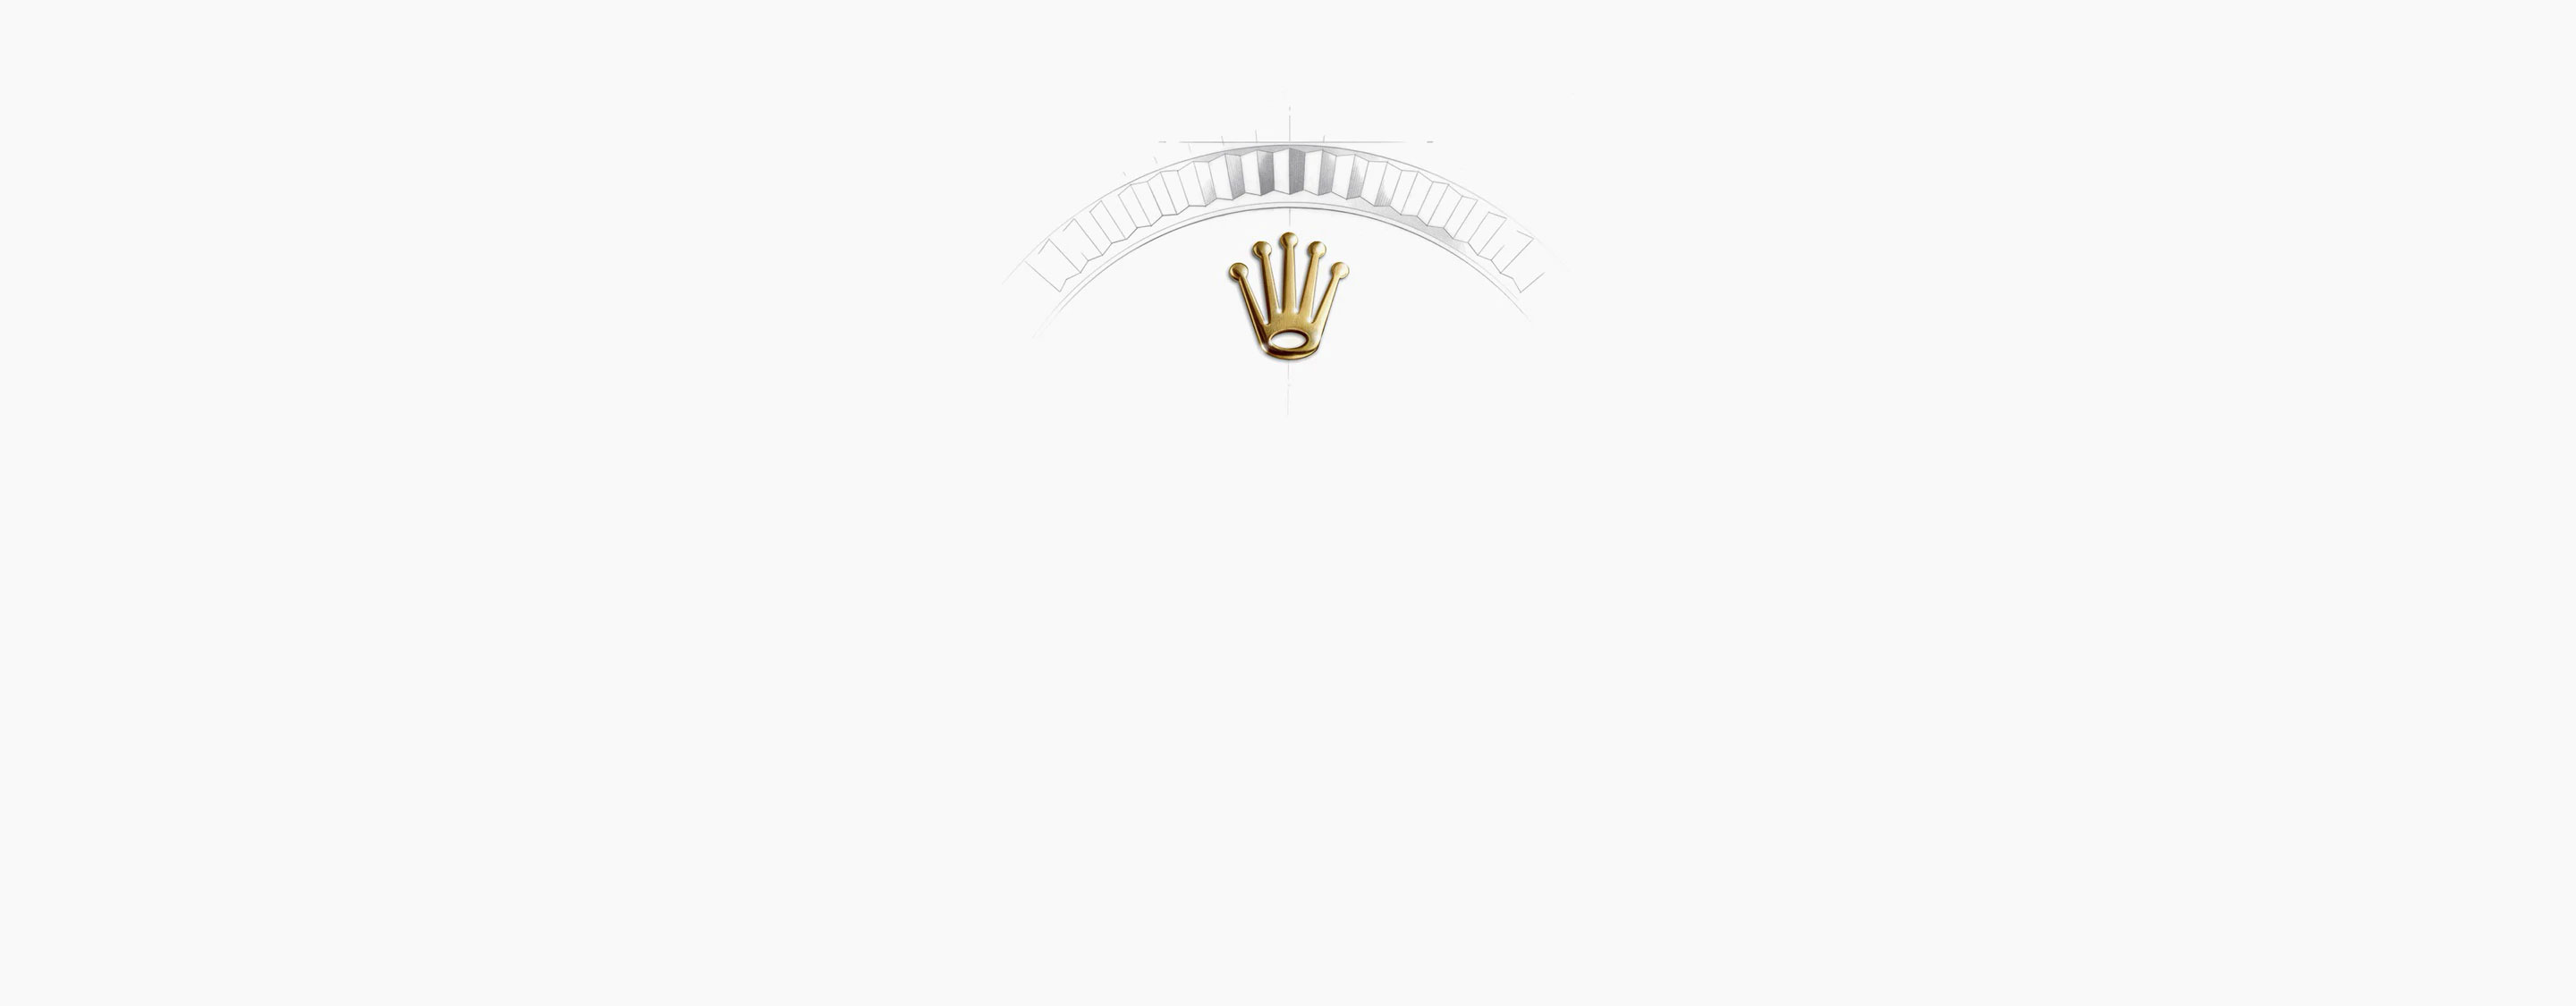 Corona Reloj Rolex Yacht-Master 42 de oro amarillo y esfera negra en Joyería Grassy